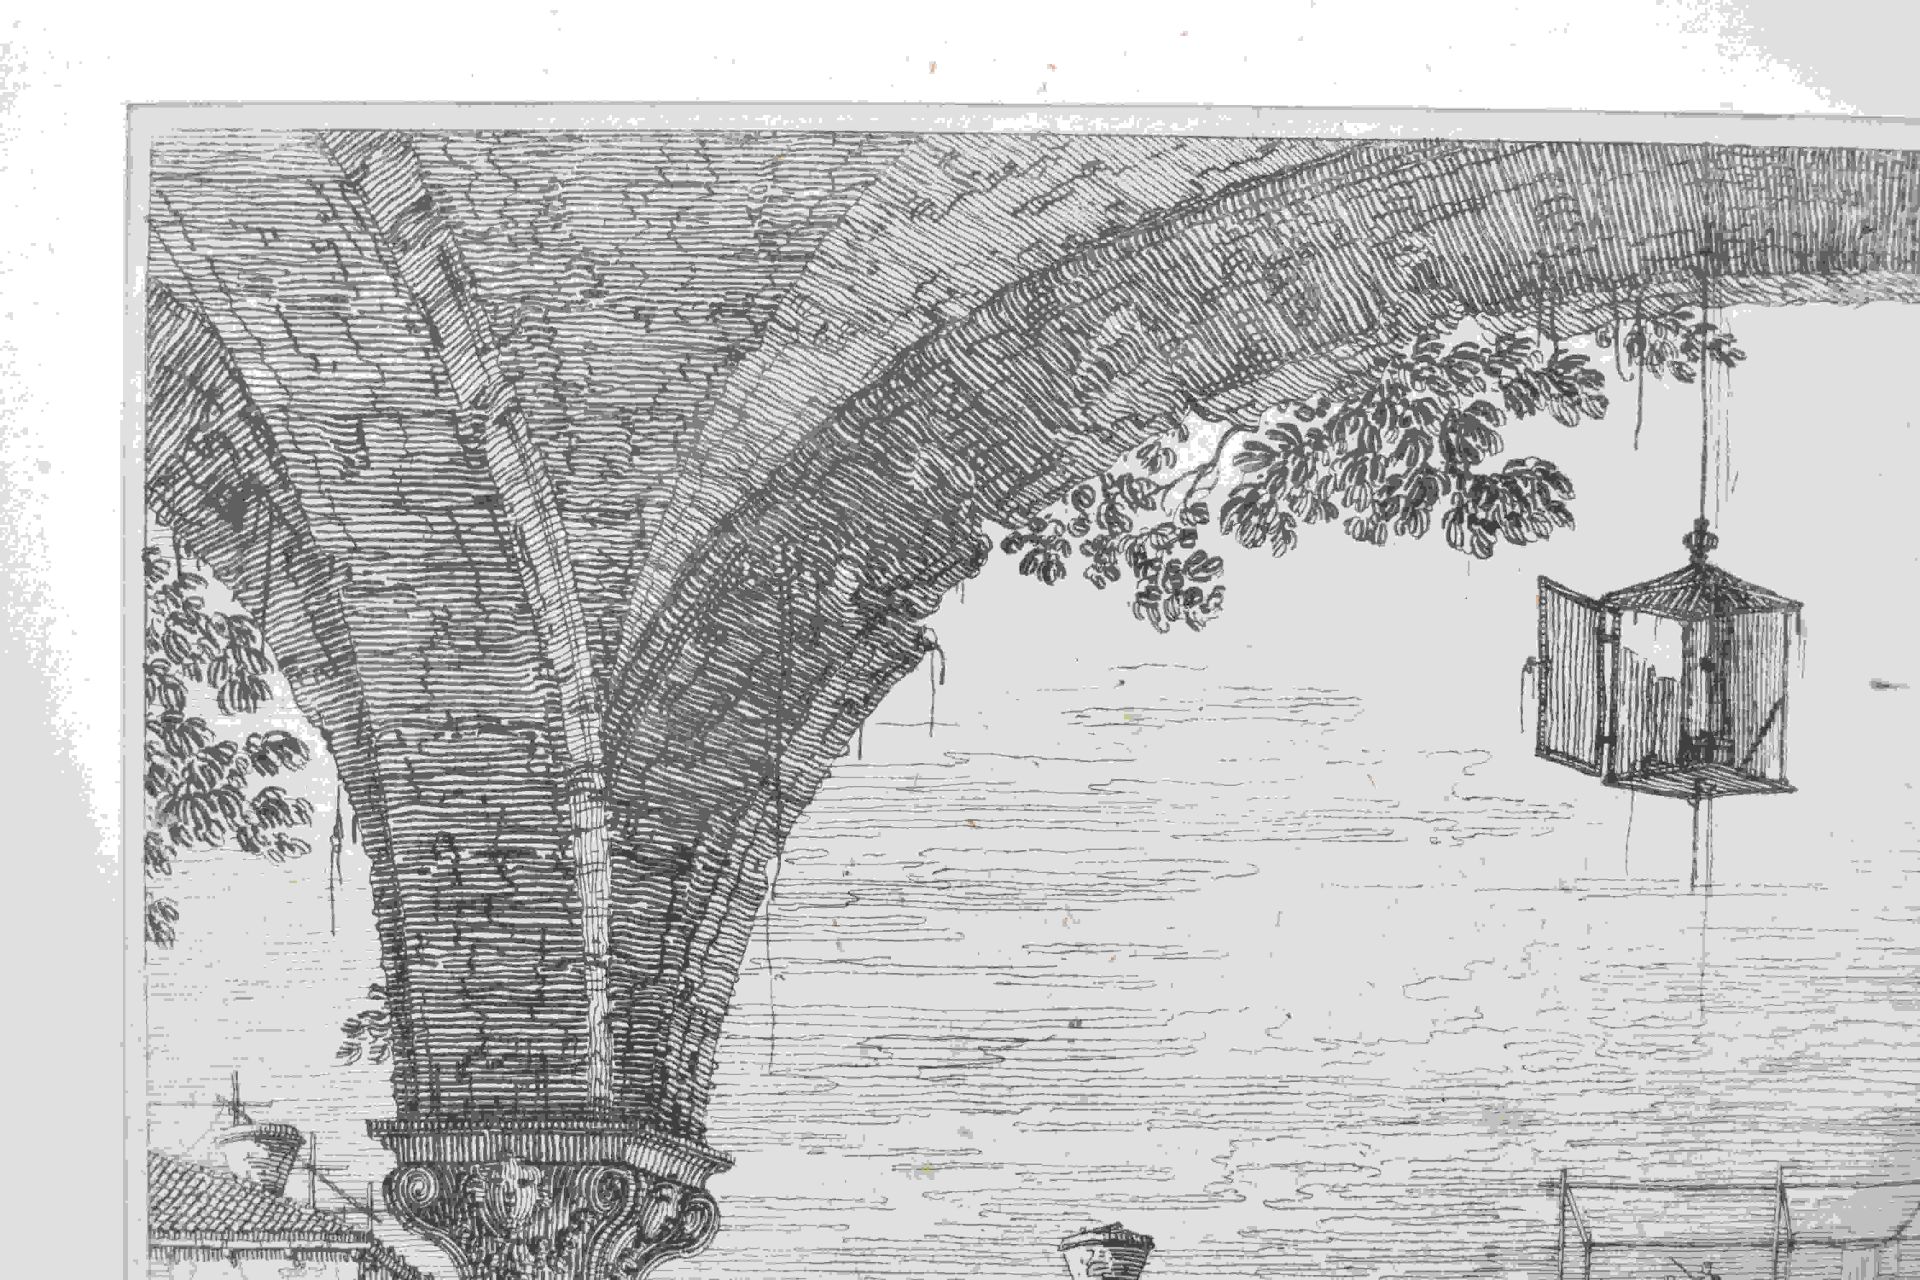 Canal, Giovanni Antonio, gen. Canaletto: Il portico con la lanterna - Bild 7 aus 24